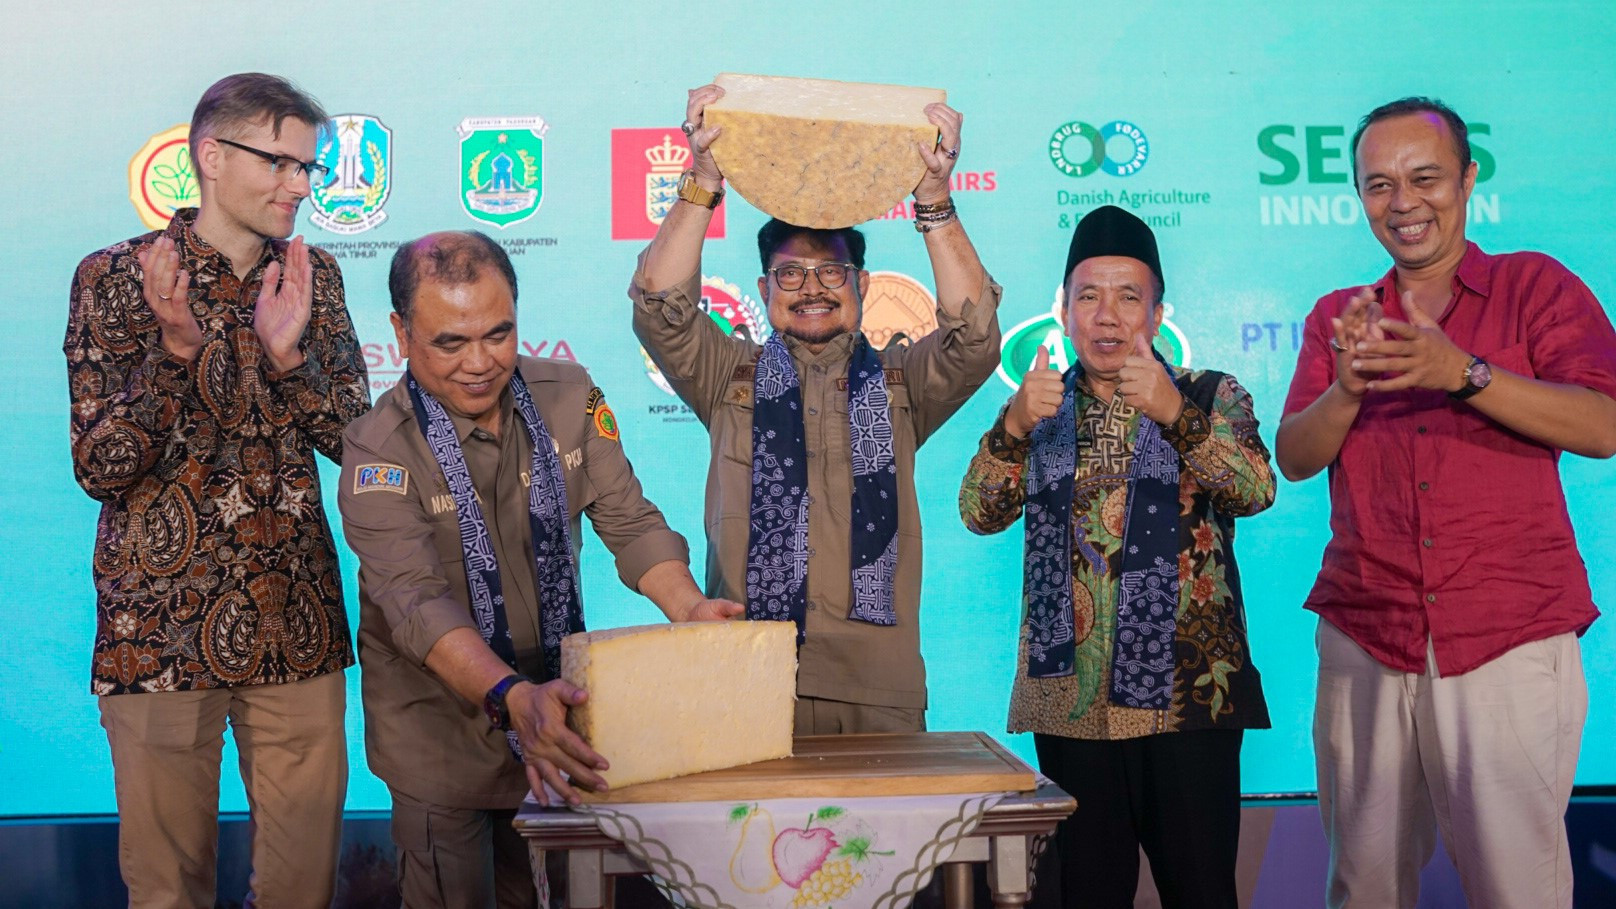 den indonesiske landbrugsminister, Syahrul Yasin Limpo osten over hovedet, som var det en pokal